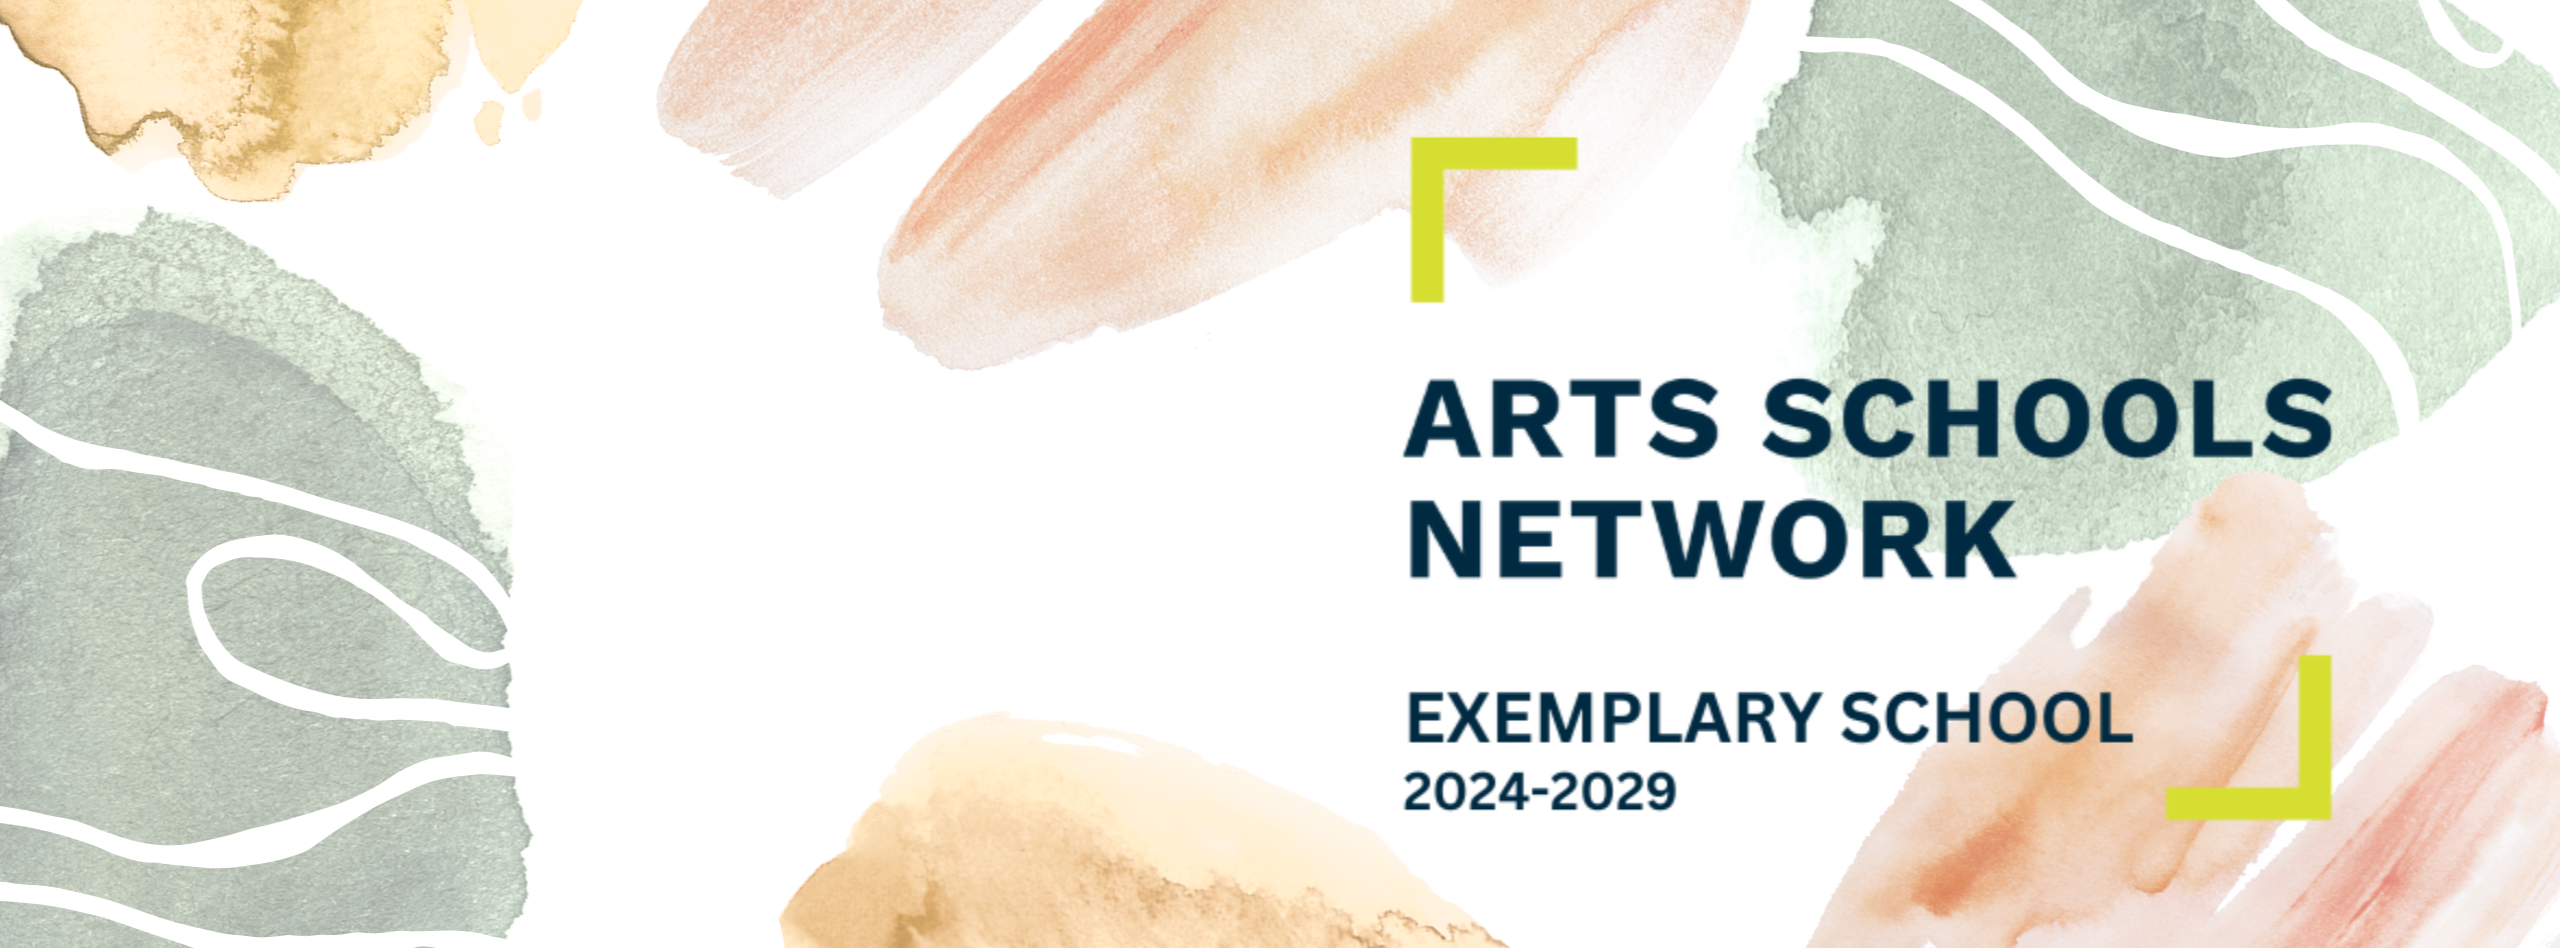 Arts School Network: Exemplary School 2024-2029